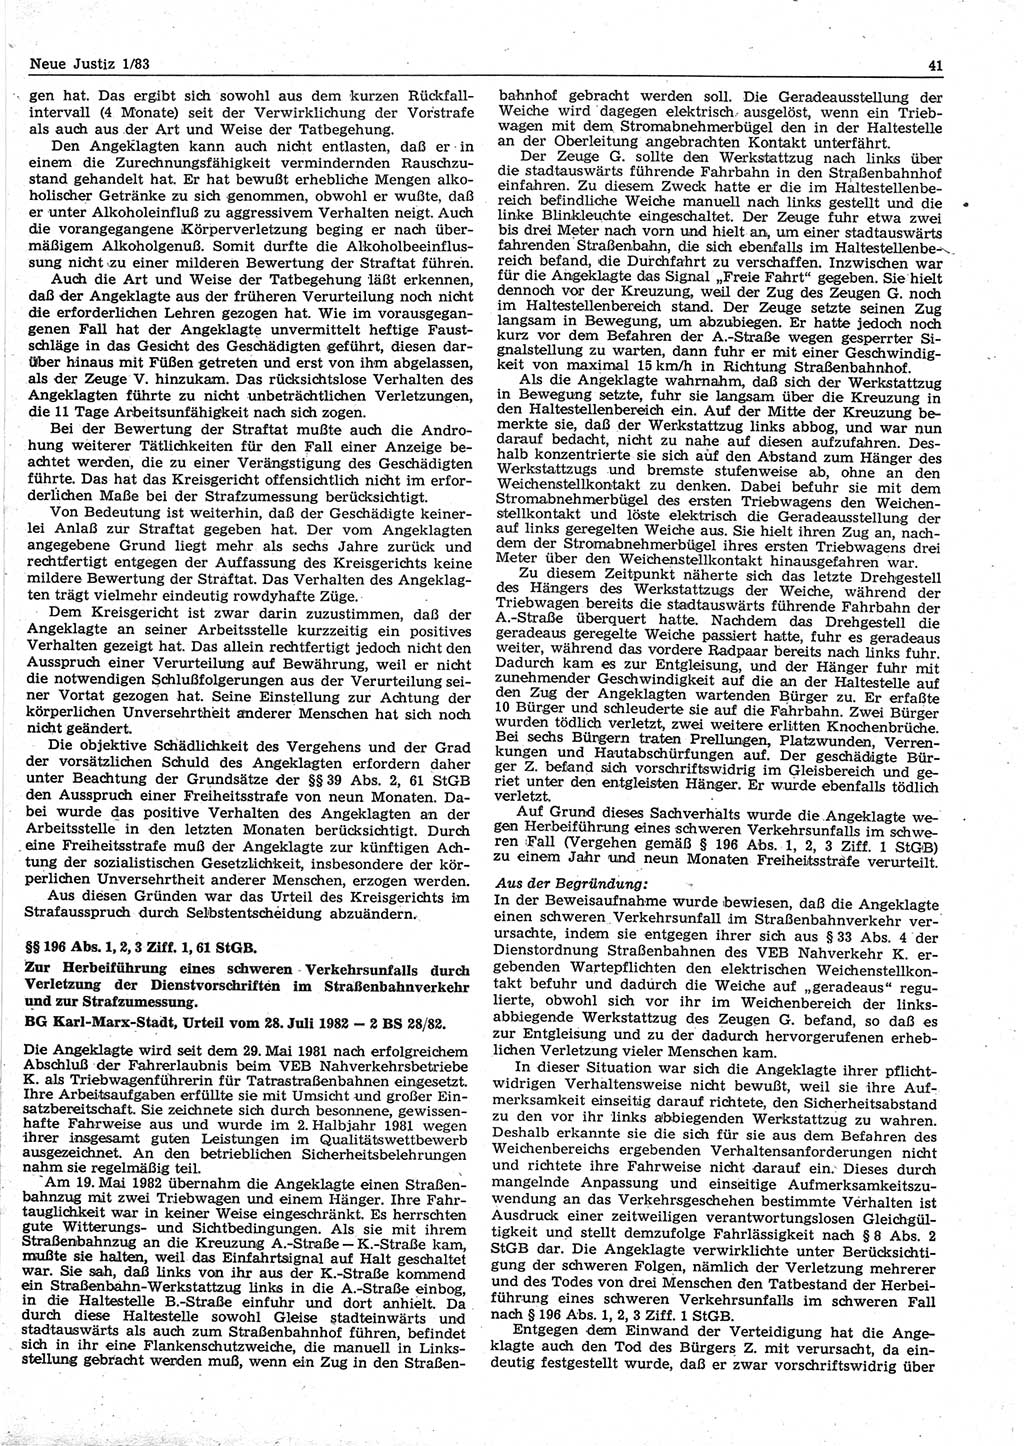 Neue Justiz (NJ), Zeitschrift für sozialistisches Recht und Gesetzlichkeit [Deutsche Demokratische Republik (DDR)], 37. Jahrgang 1983, Seite 41 (NJ DDR 1983, S. 41)